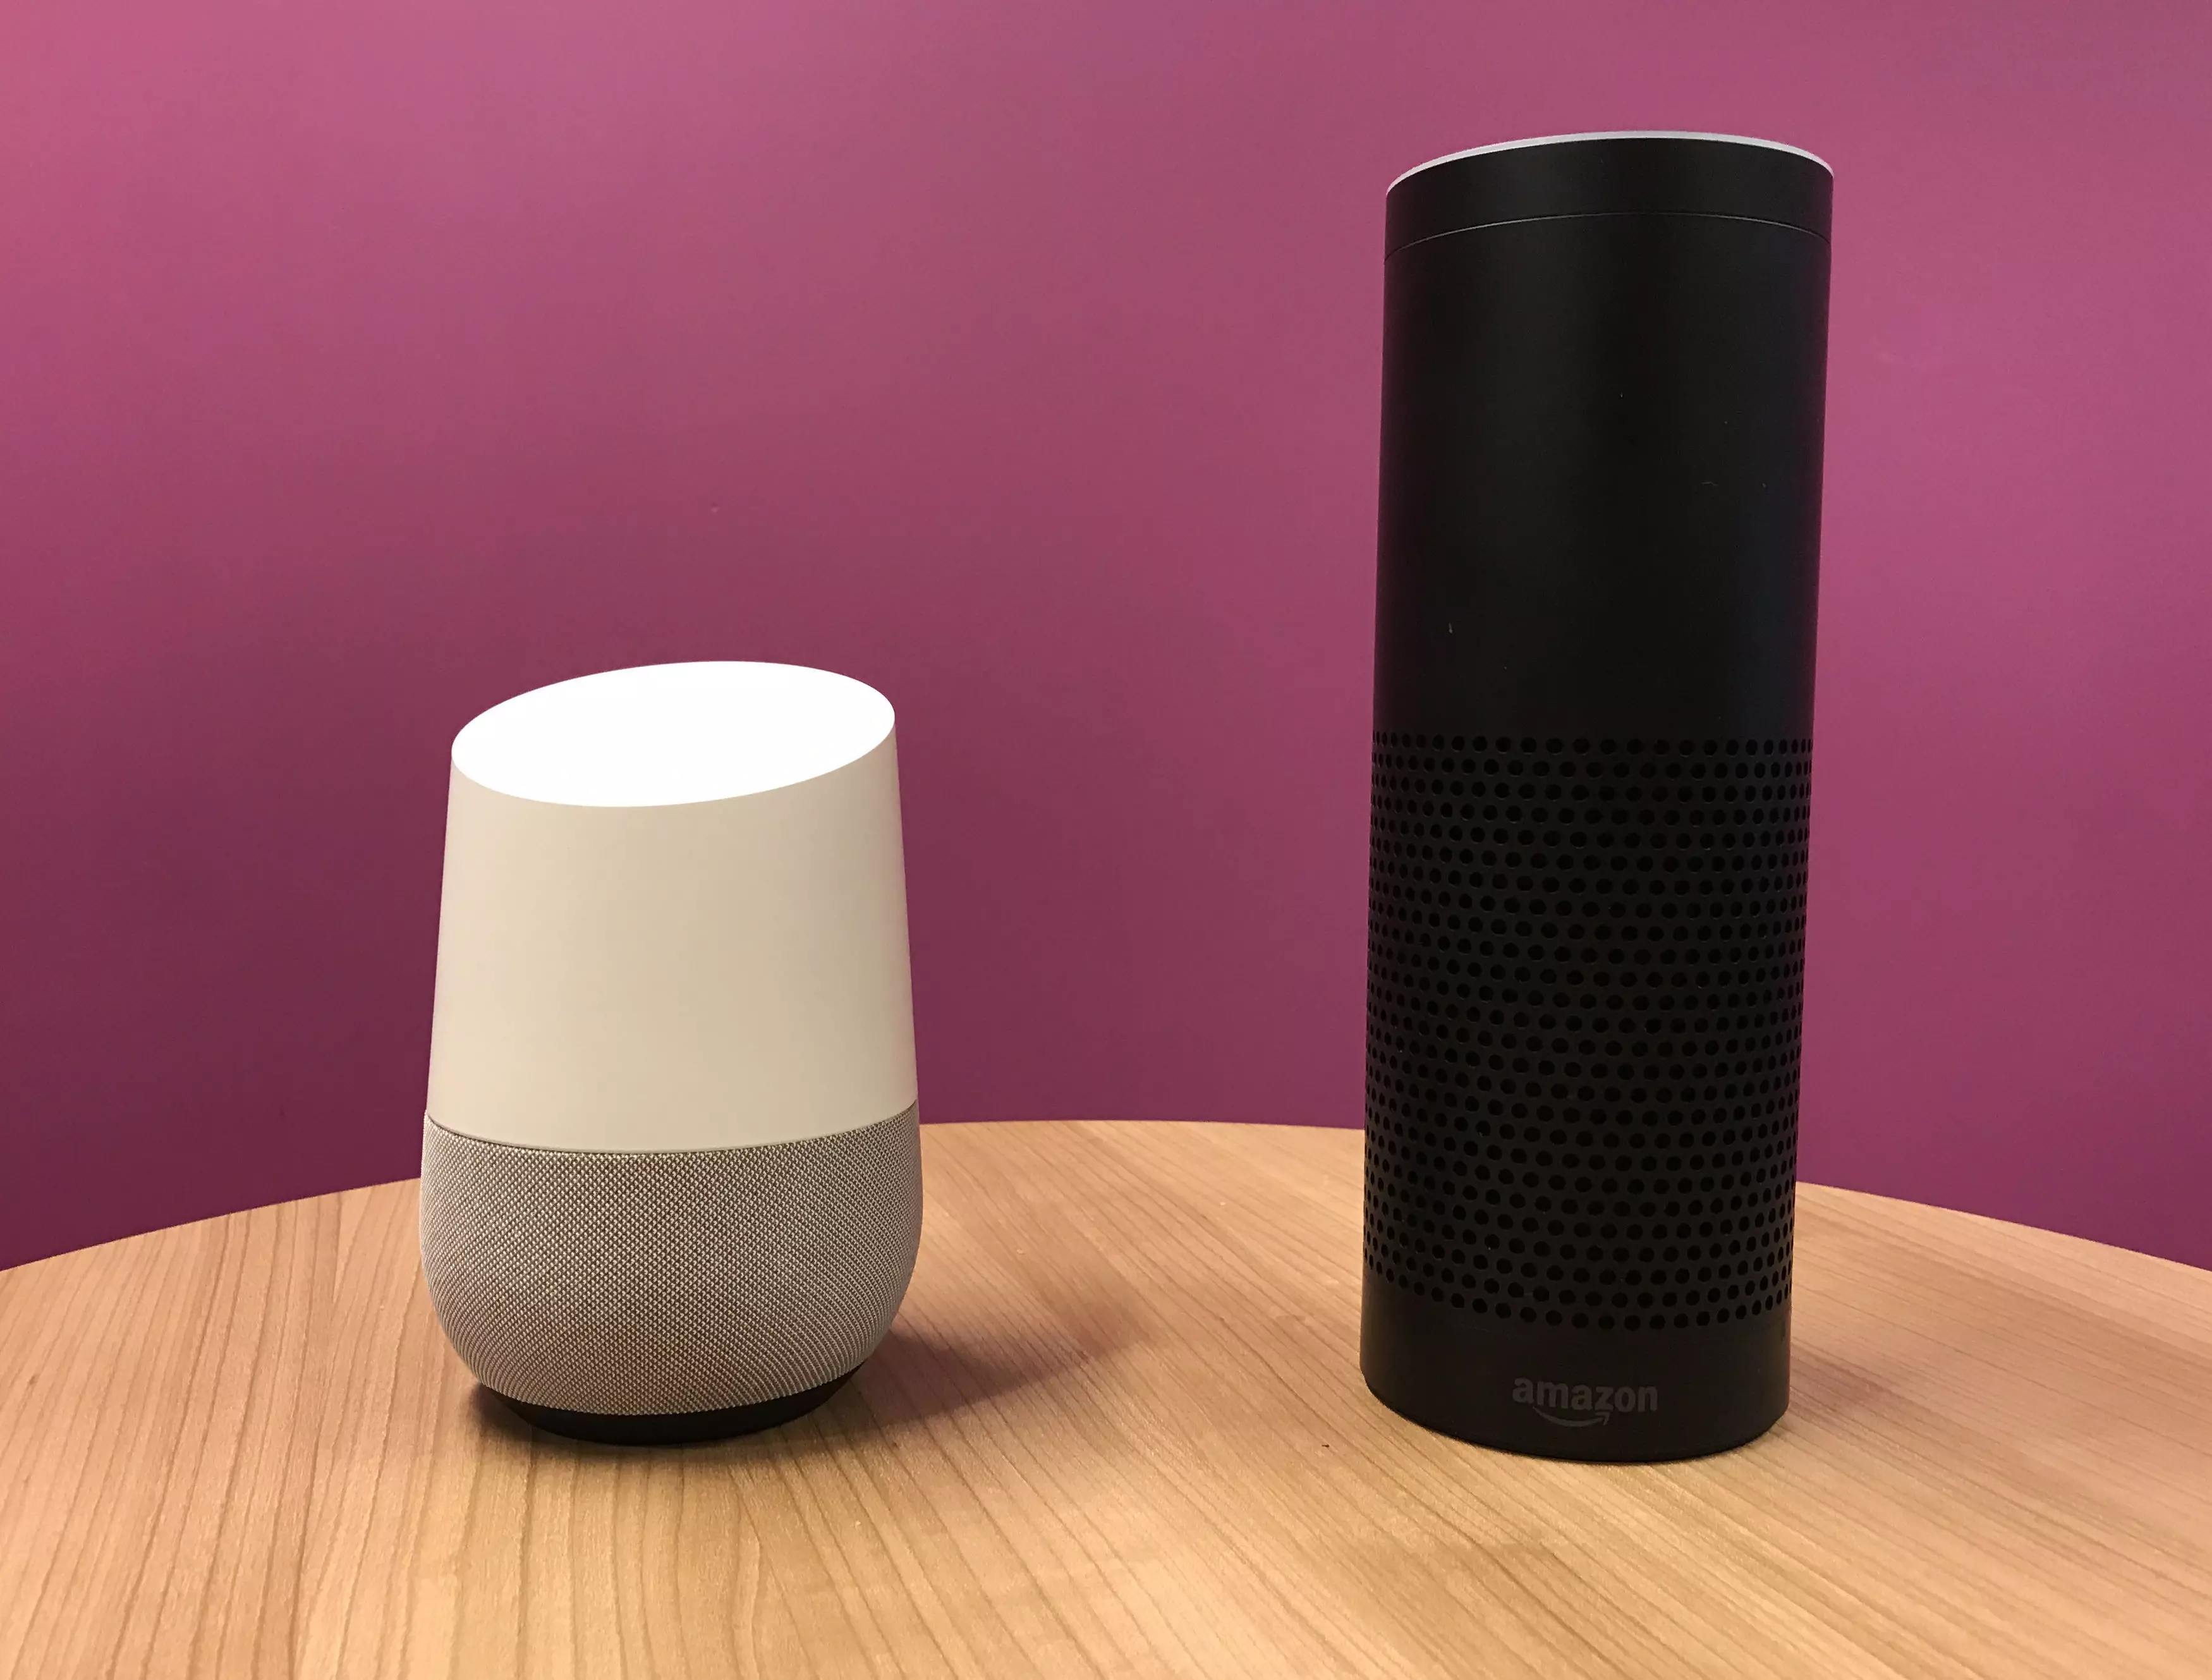 An Amazon Echo alongside a Google Home.